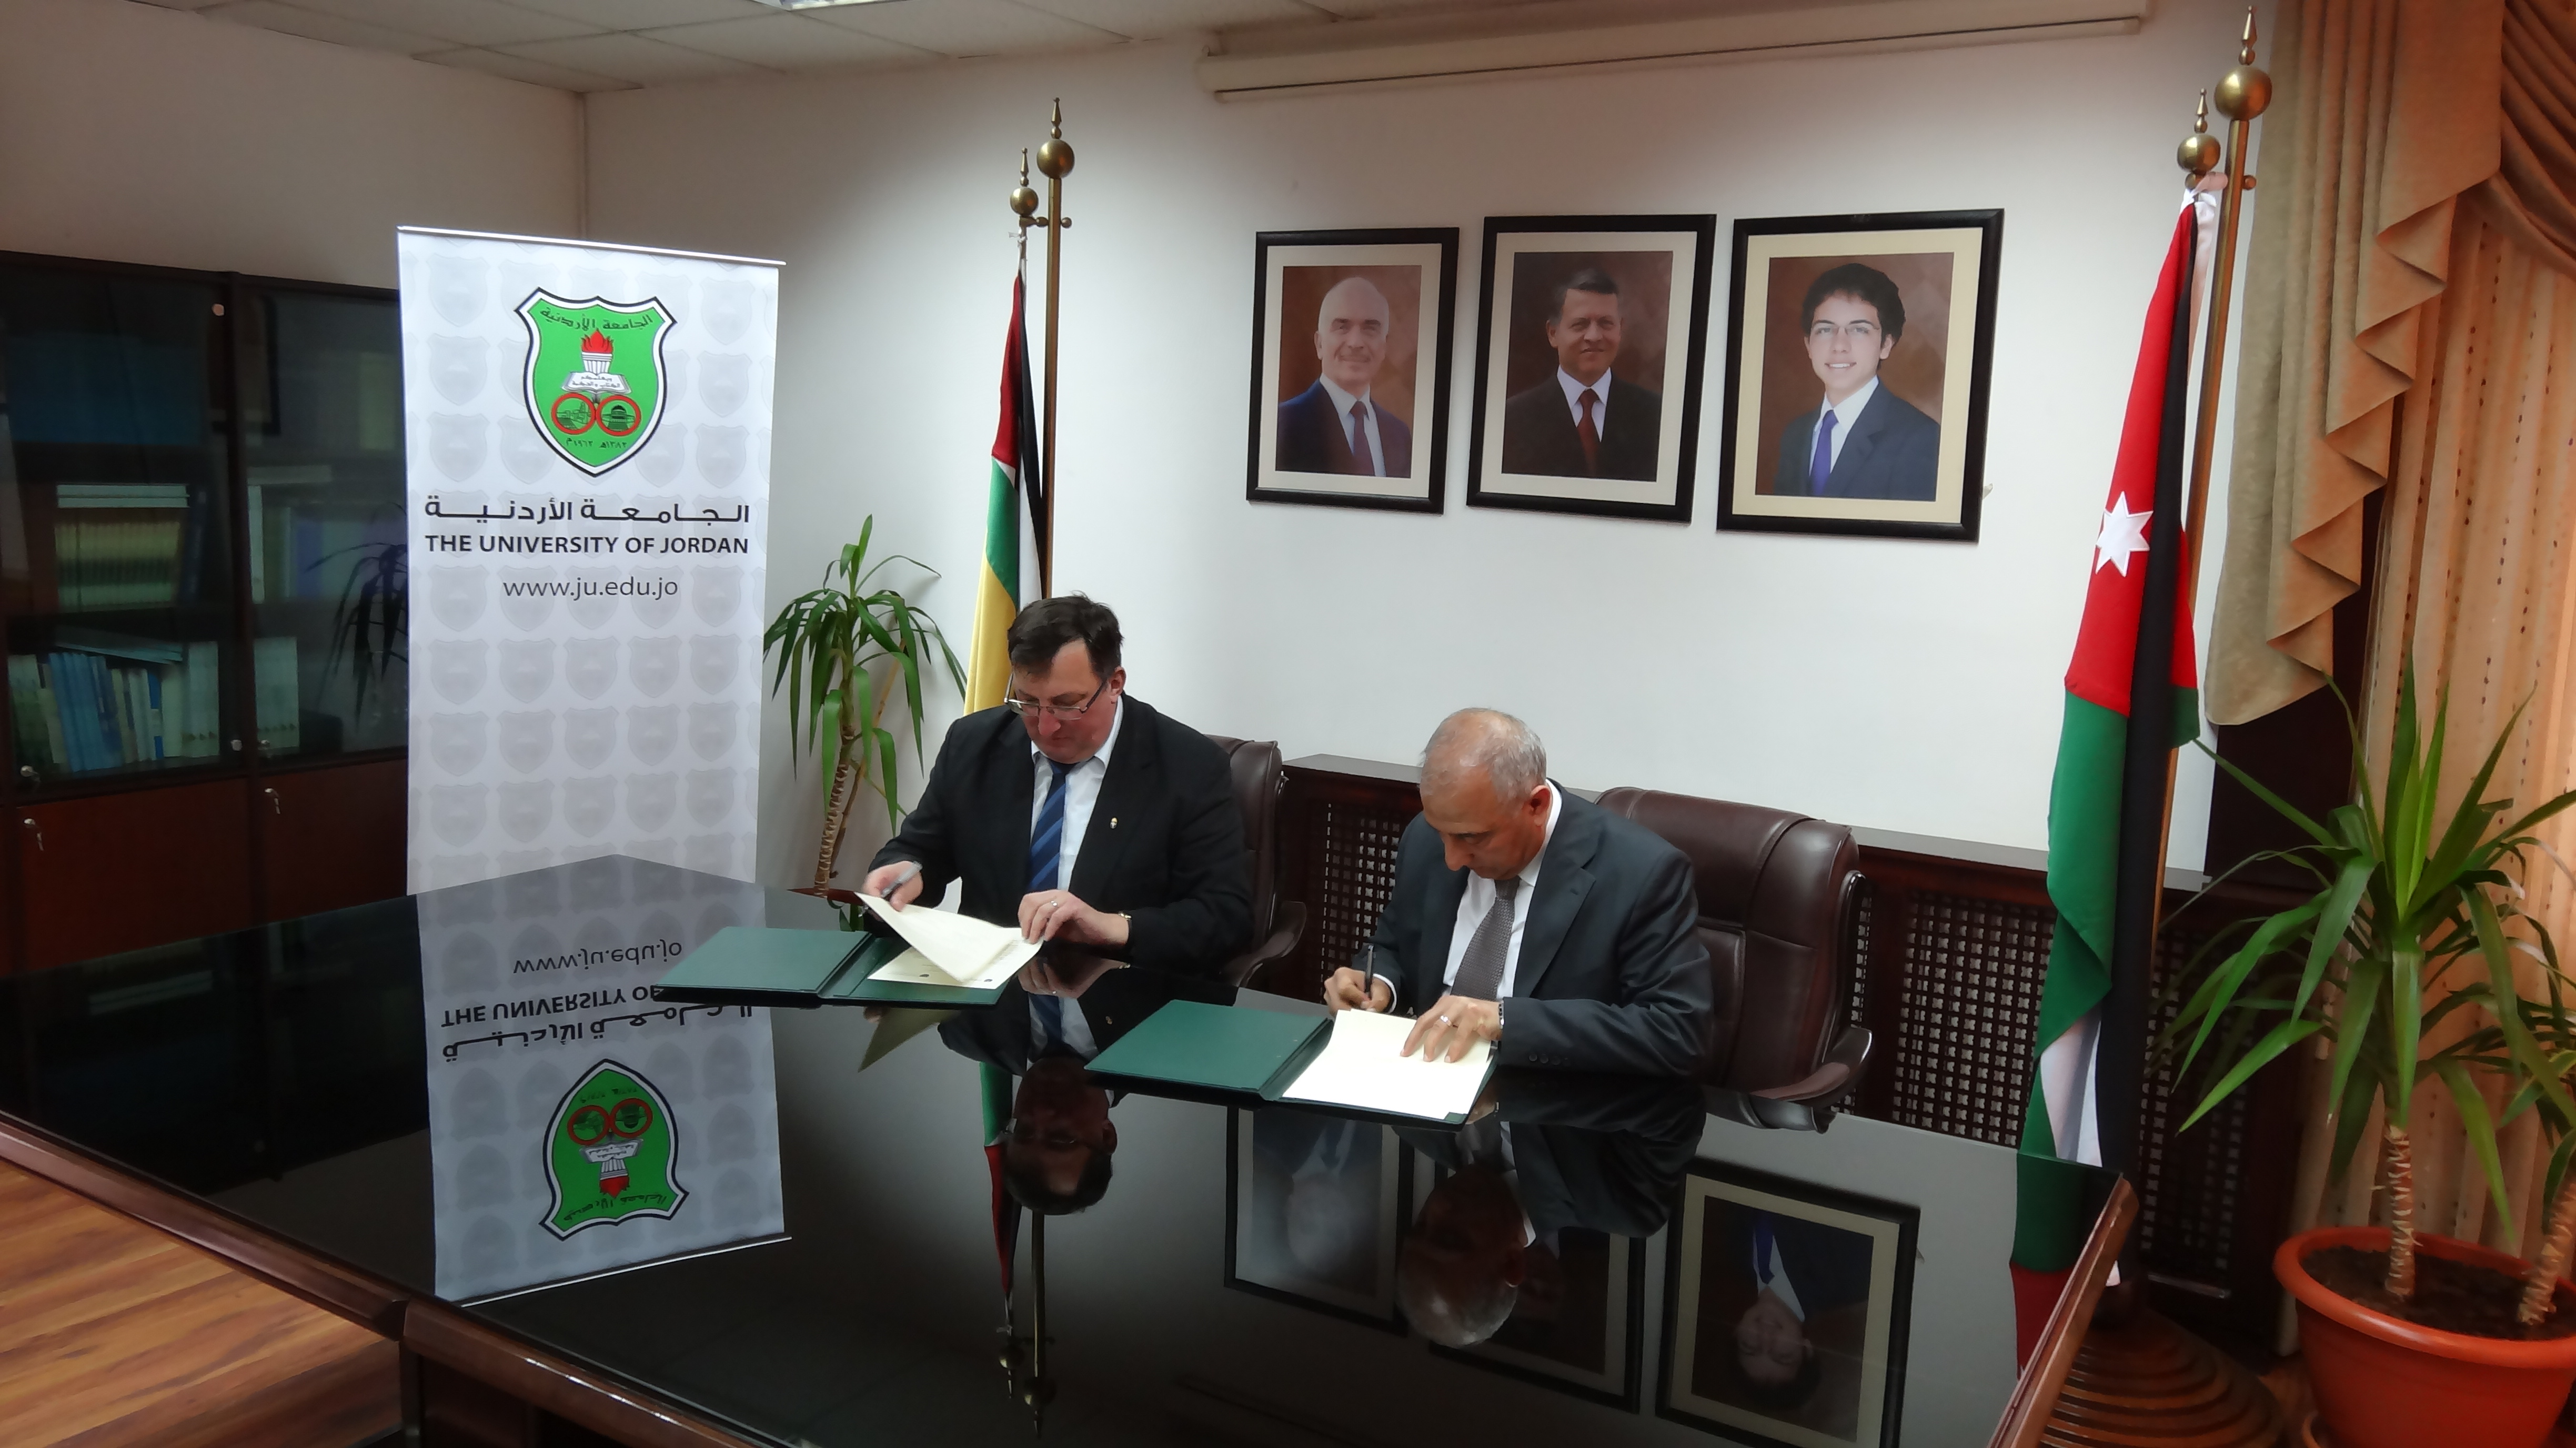 Együttműködési megállapodás a PPKE és jordániai egyetemek közt